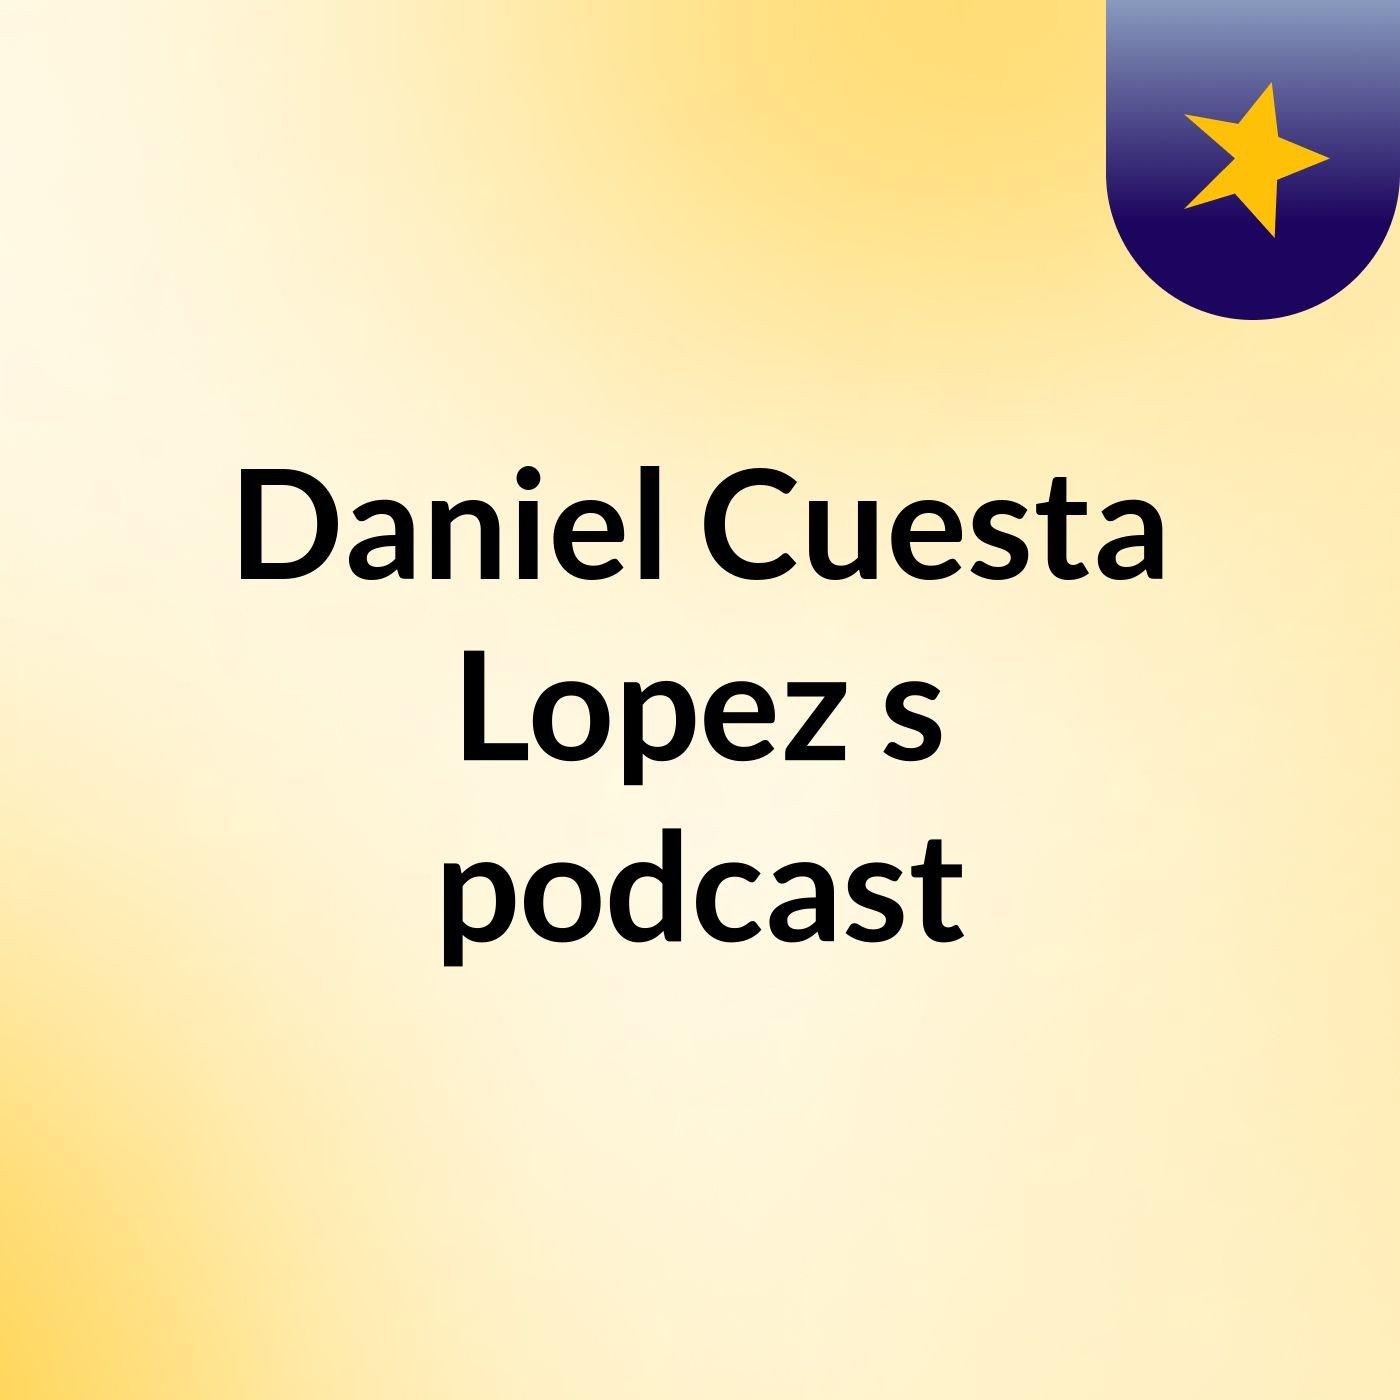 Daniel Cuesta Lopez's podcast